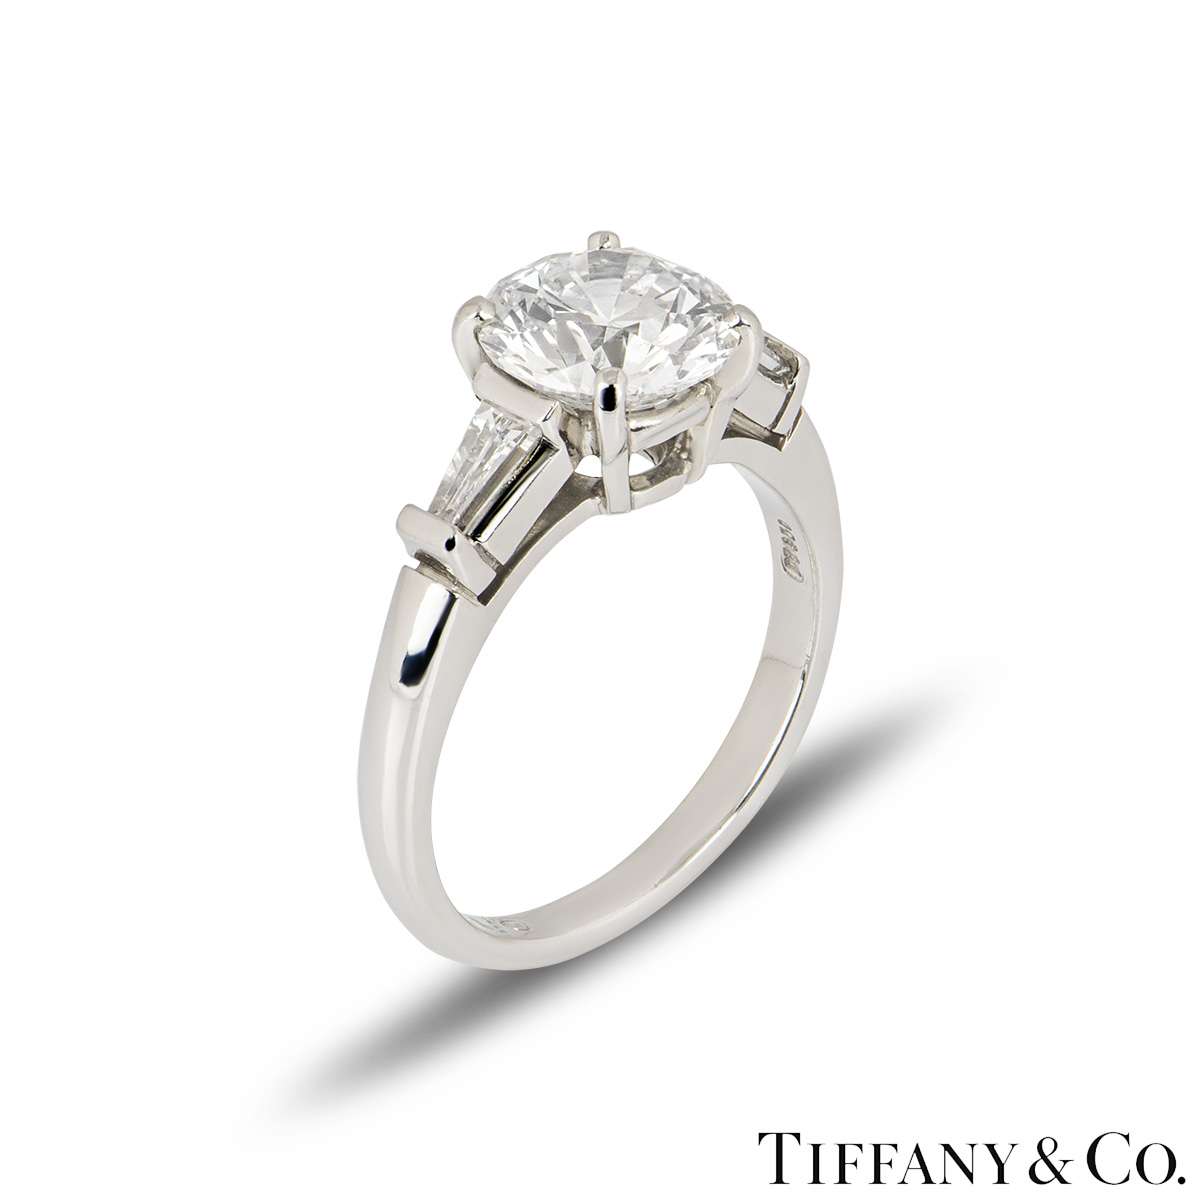 Tiffany & Co. Platinum Round Brilliant Cut Diamond Three Stone Ring 2.10ct E/VS1